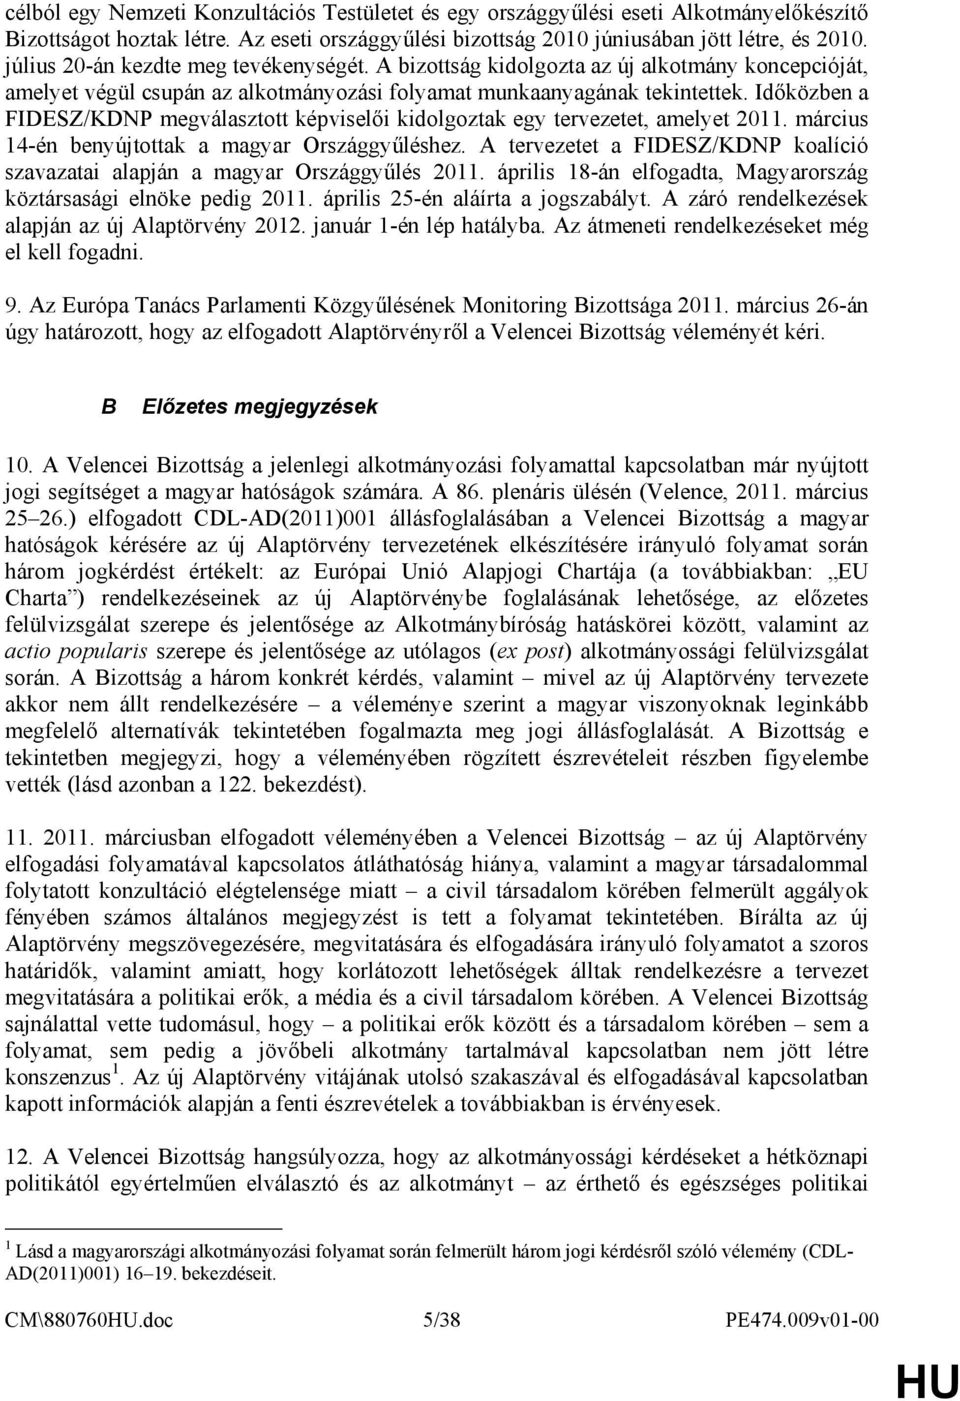 Idıközben a FIDESZ/KDNP megválasztott képviselıi kidolgoztak egy tervezetet, amelyet 2011. március 14-én benyújtottak a magyar Országgyőléshez.